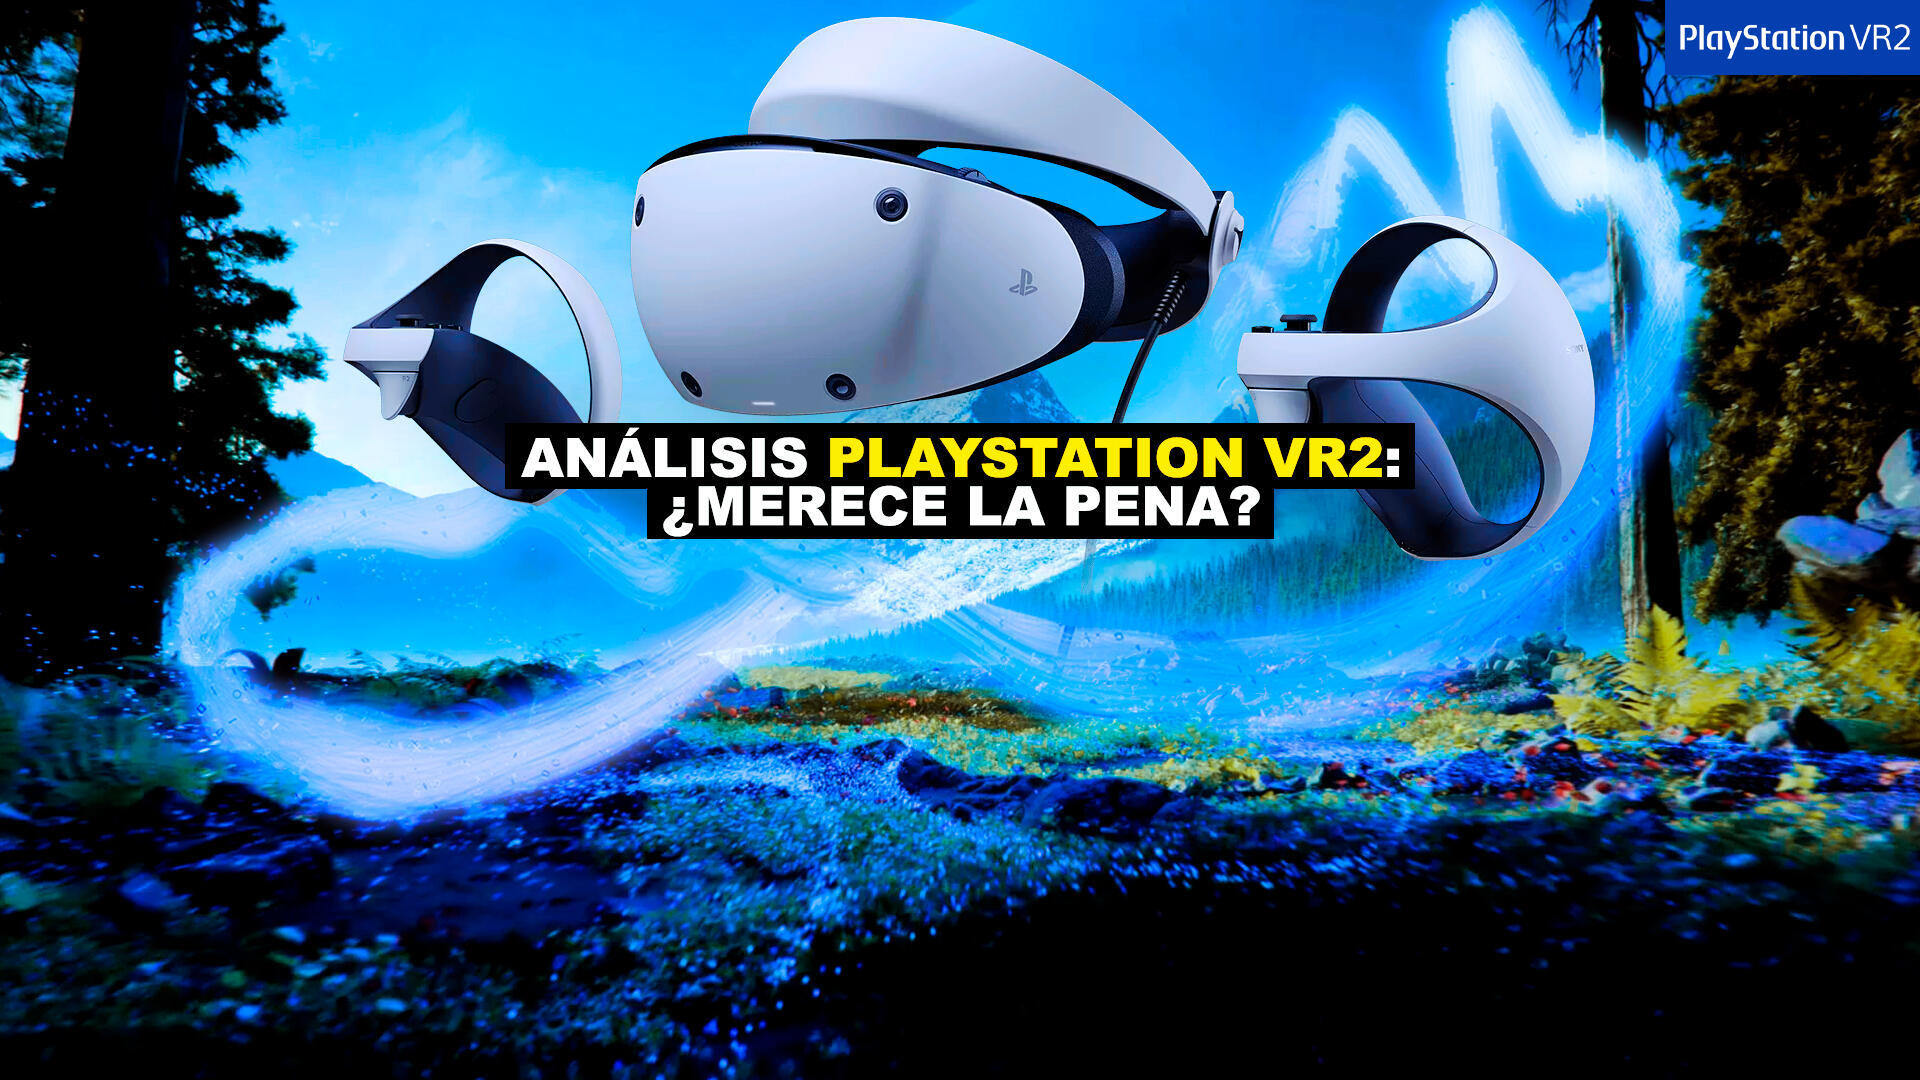 Sony PlayStation VR V2 + Camera V2 Gafas VR - realidad Virtual